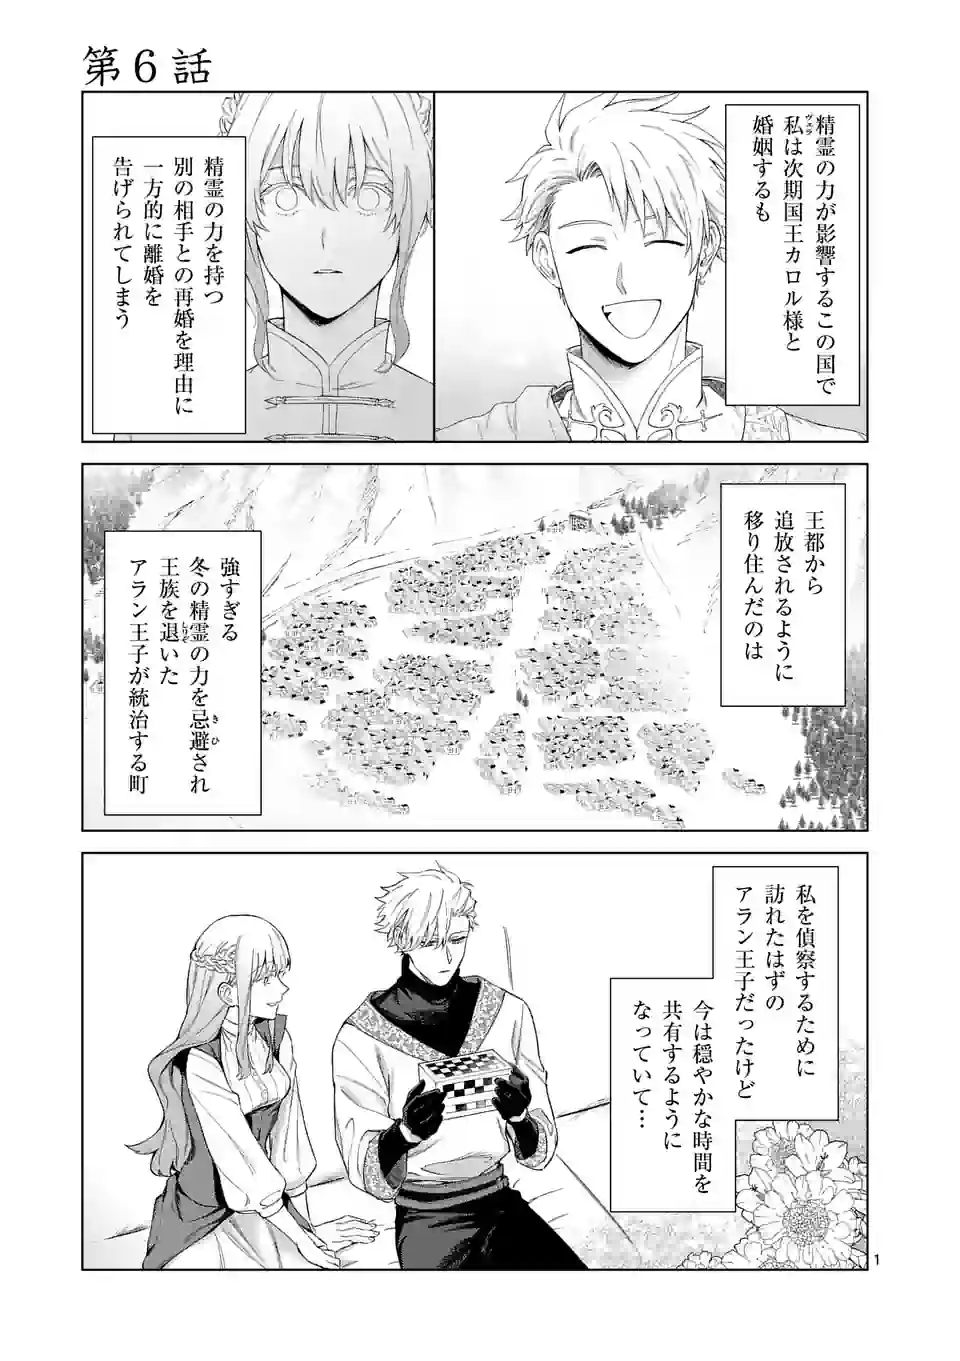 Mou Kyoumi ga Nai to Rikonsareta Reijou no Igai to Tanoshii Shinseikatsu - Chapter 6 - Page 1